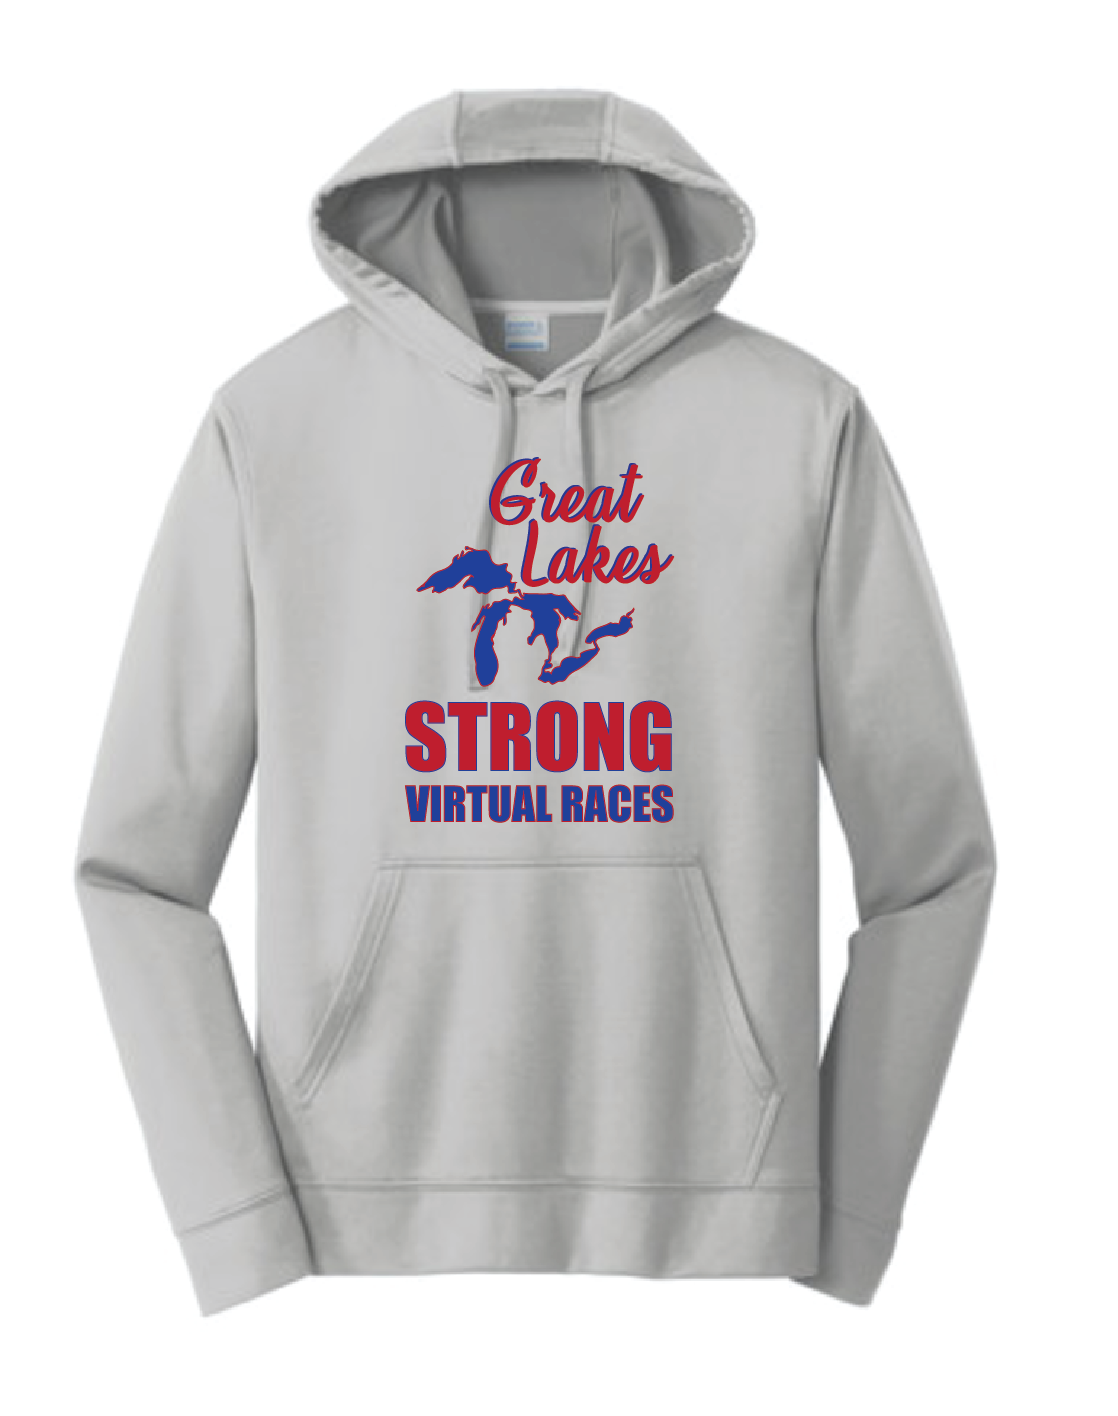 Great Lakes Strong Hoodie Sweatshirt